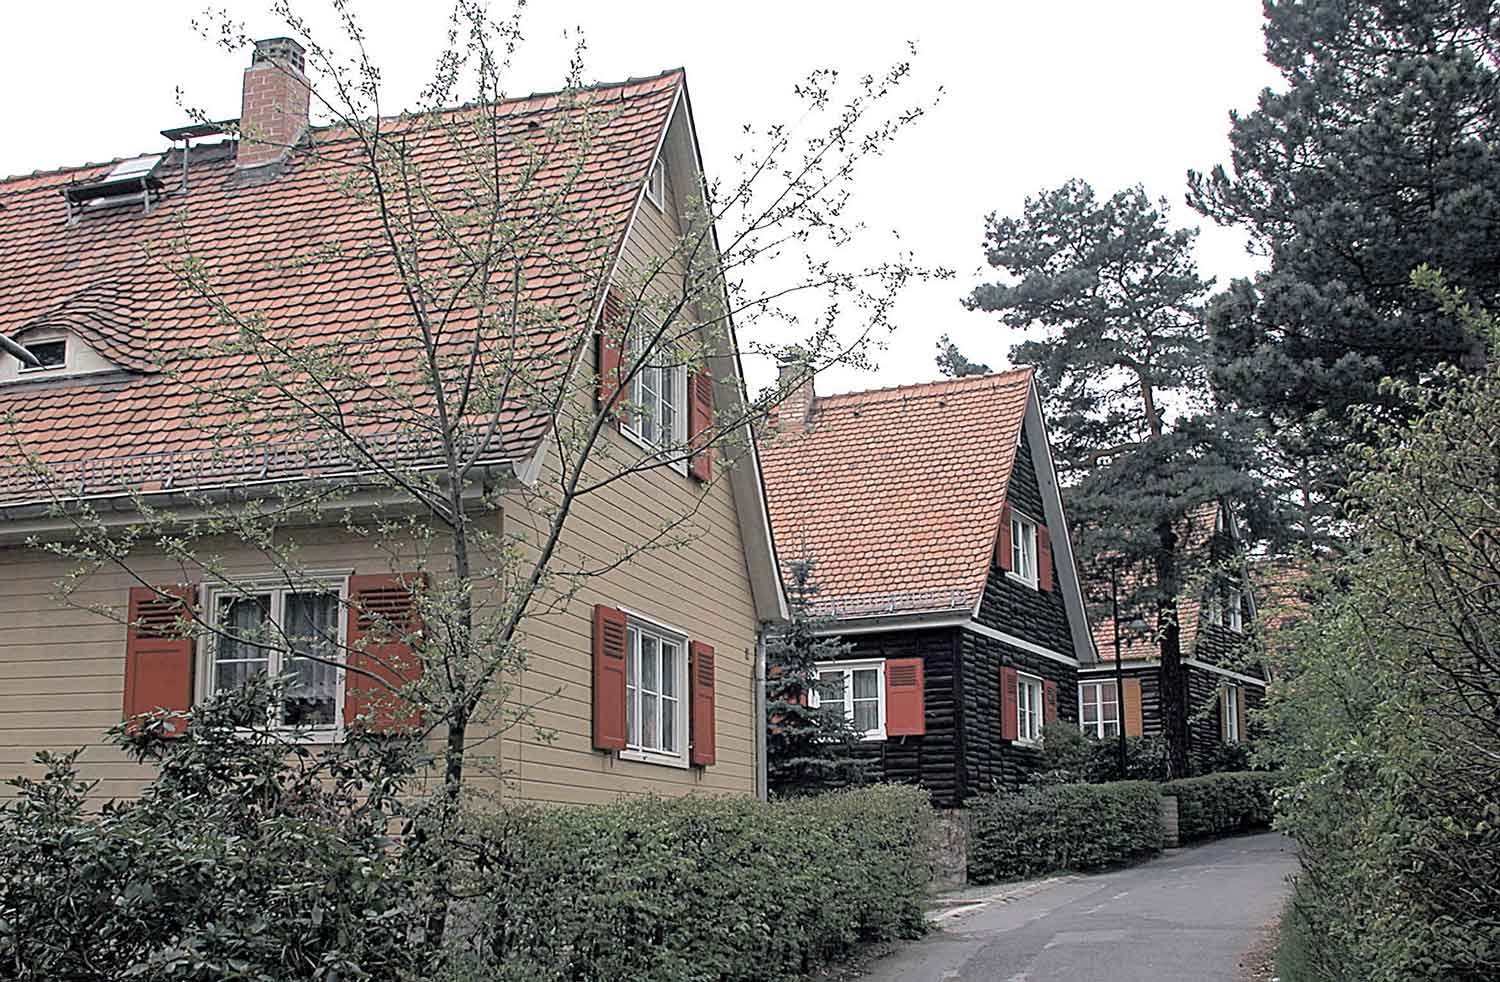 Foto, farbig: Drei Einfamilienhäuser mit Satteldach an einem schmalen asphaltierten Weg